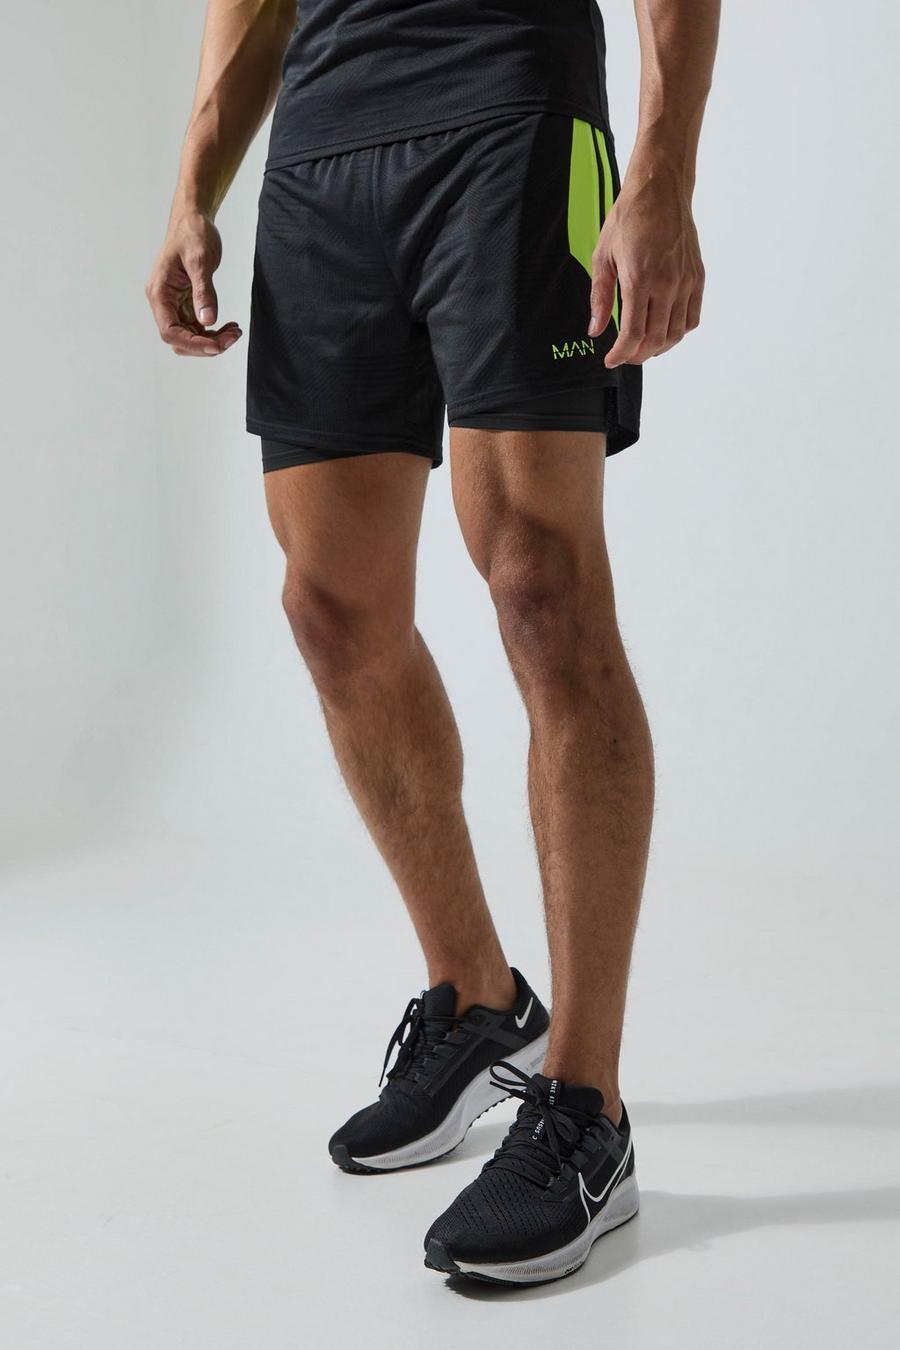 Pantaloncini 2 in 1 Man Active da 12 cm in jacquard con motivi geometrici, Black